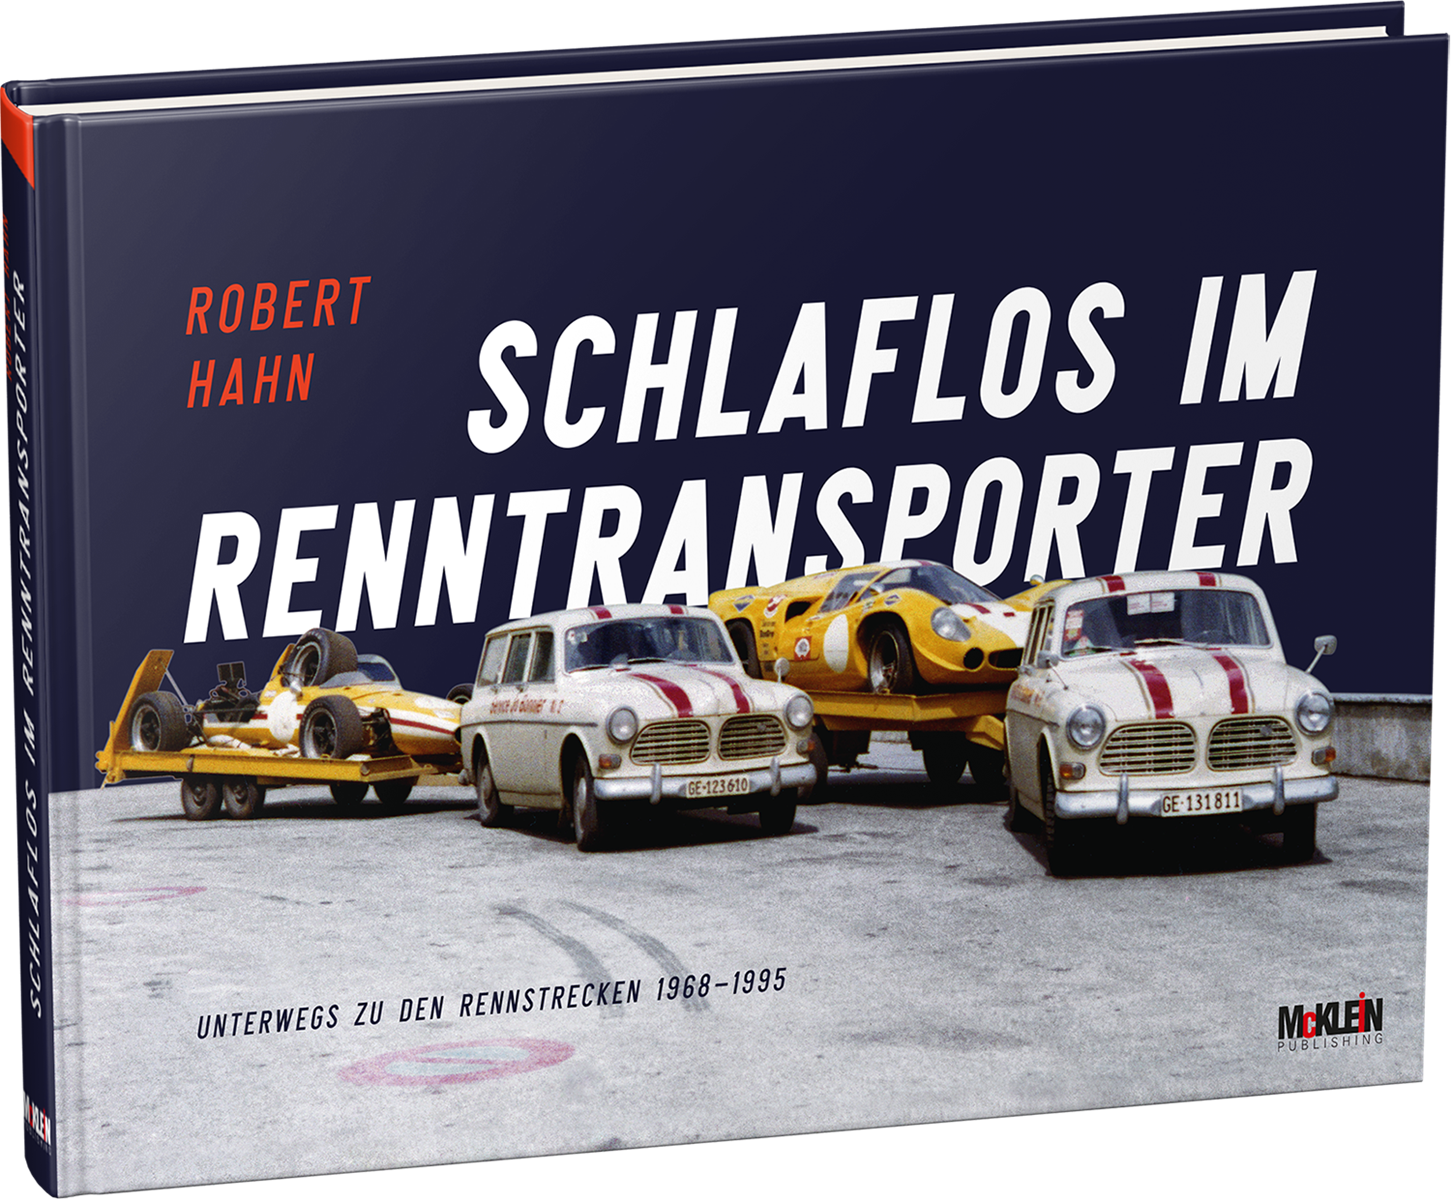 Schlaflos im | Robert Hahn Books McKlein / RacingWebShop RallyWebShop McKlein Renntransporter | Store / Store | 